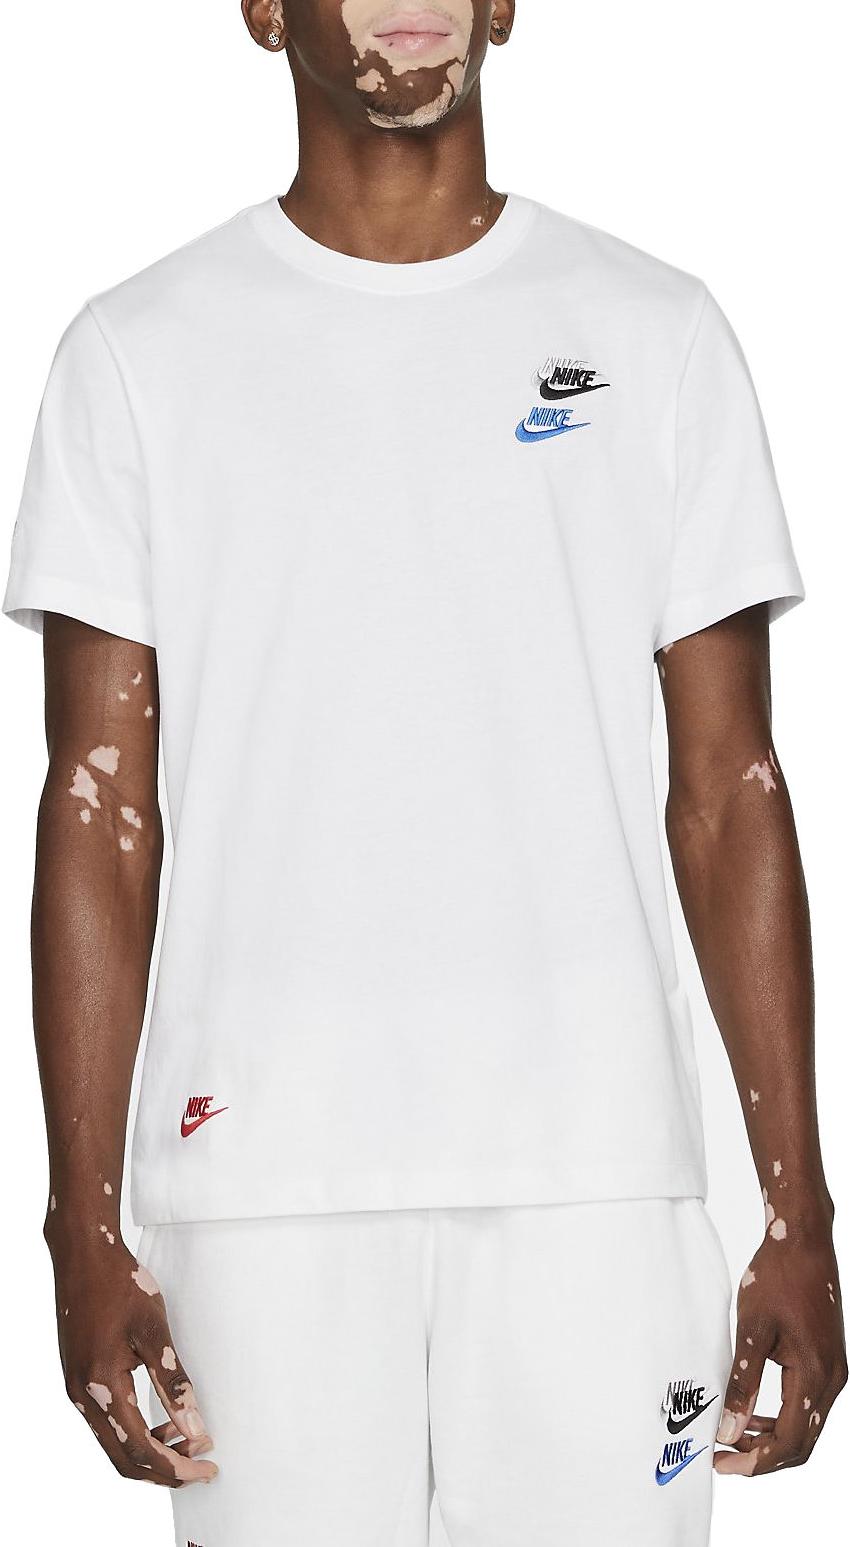 Camiseta Nike Men s T-Shirt - Top4Running.es